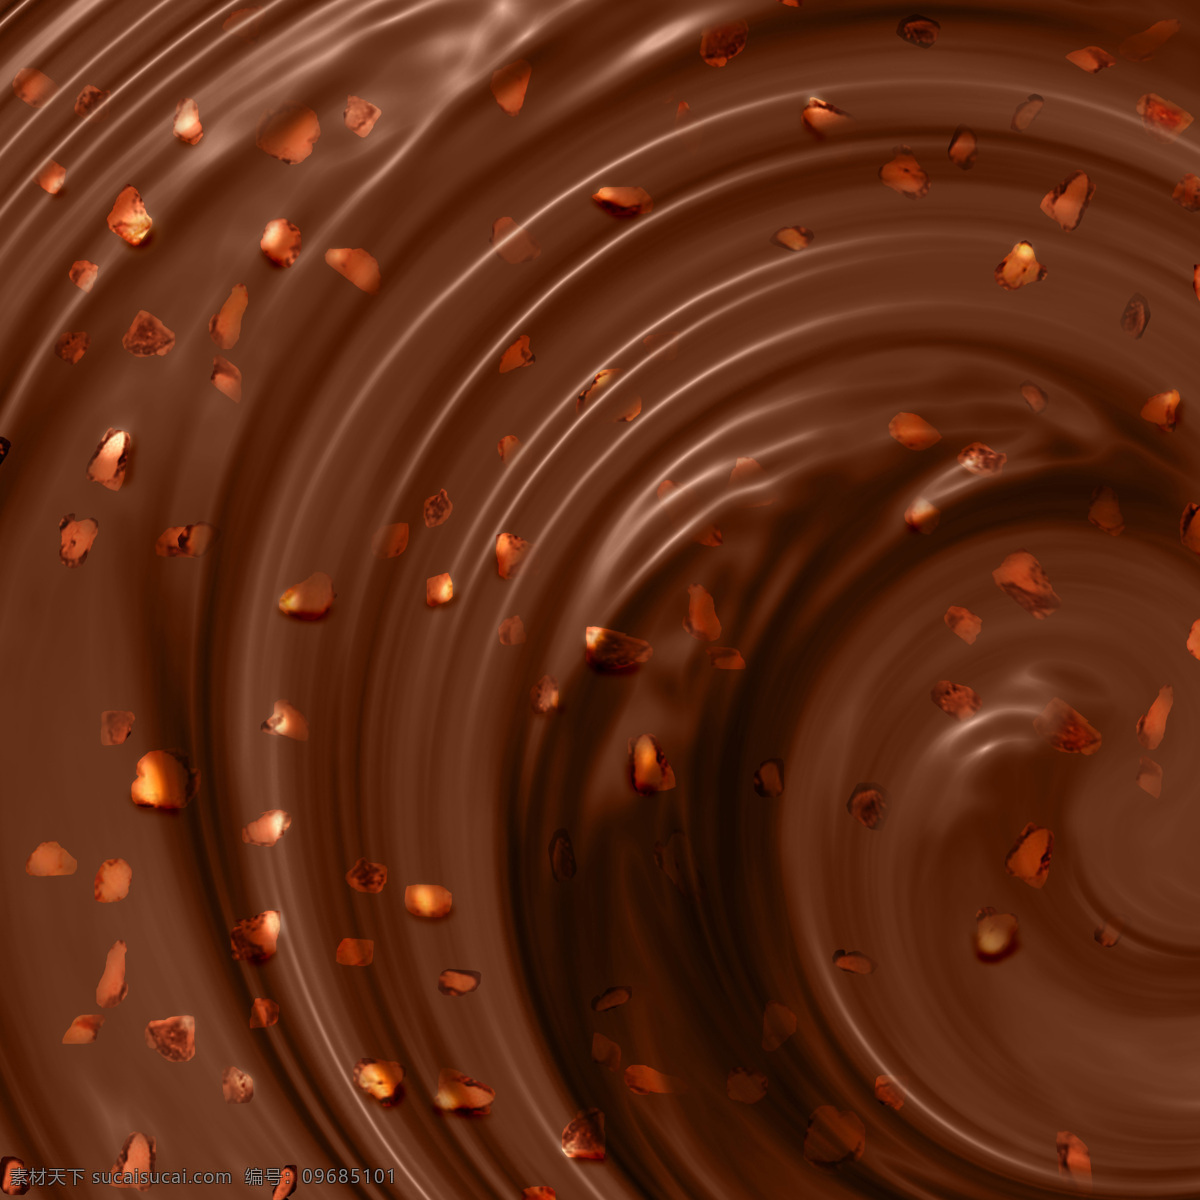 巧克力 背景 纹理 巧克力漩涡 螺旋 巧克力纹理 巧克力背景 朱古力 巧克力美食 食物摄影 点心图片 餐饮美食